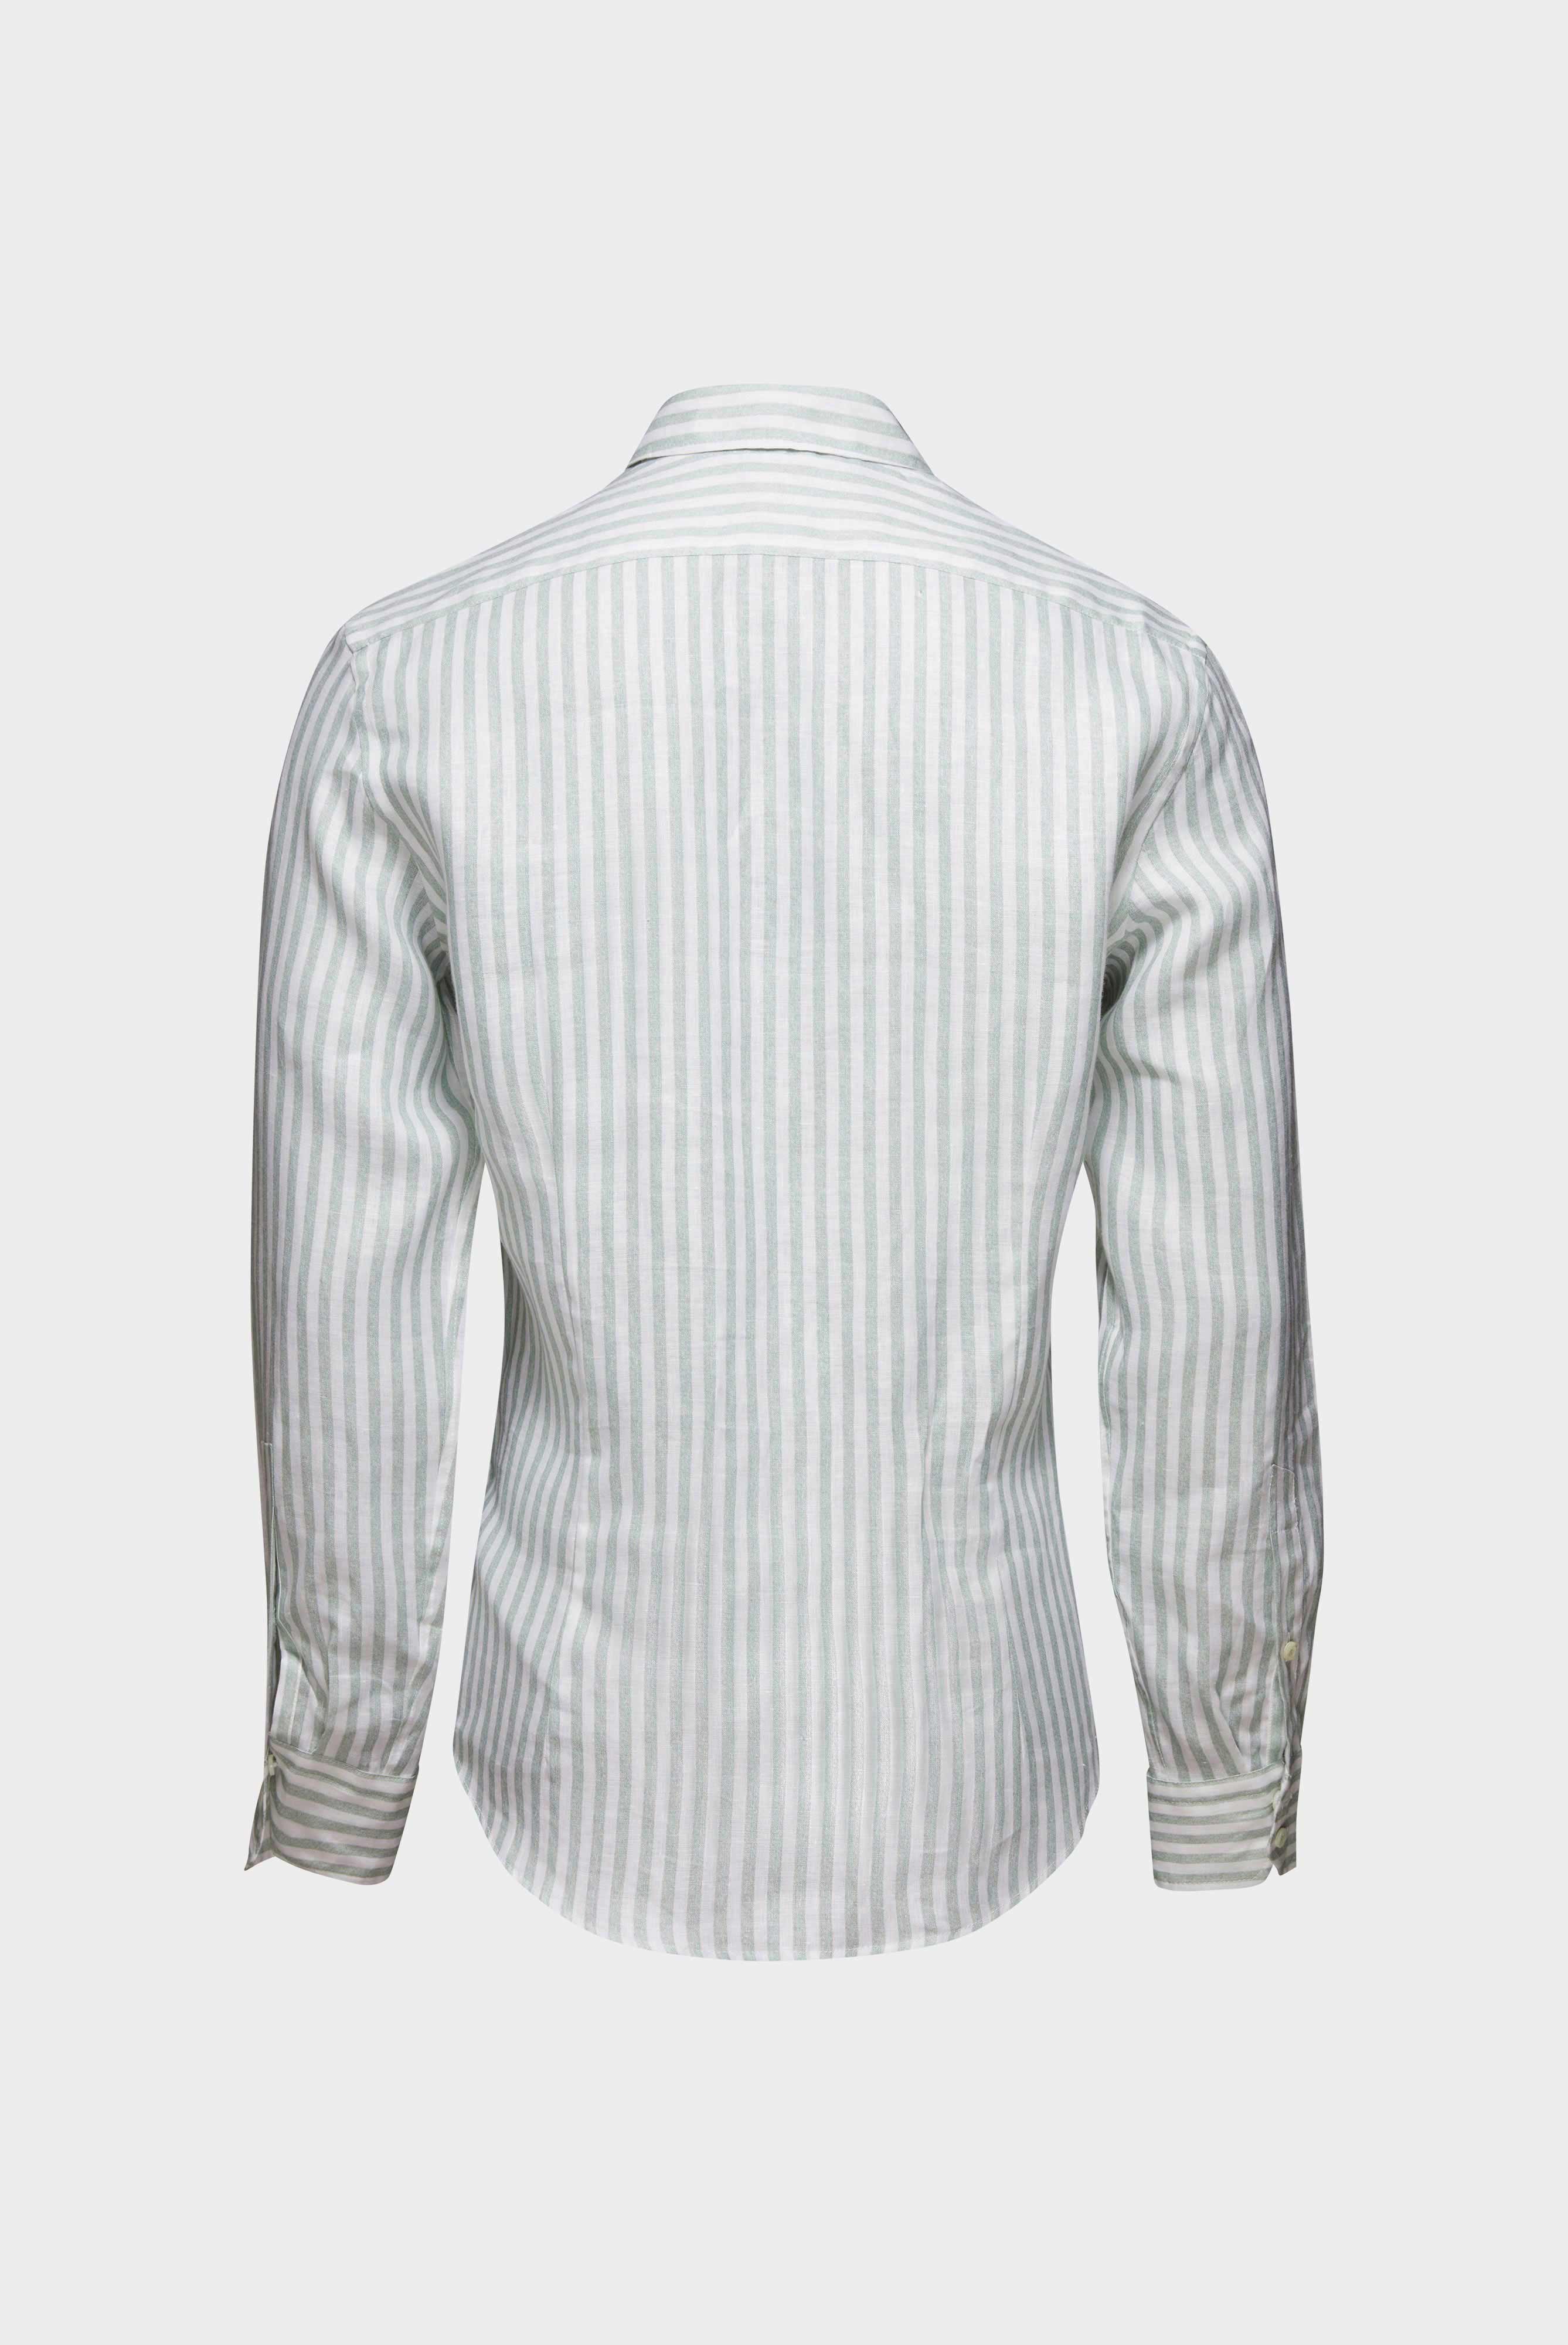 Casual Hemden+Leinenhemd mit Streifen-Druck Tailor Fit+20.2013.9V.170352.940.40